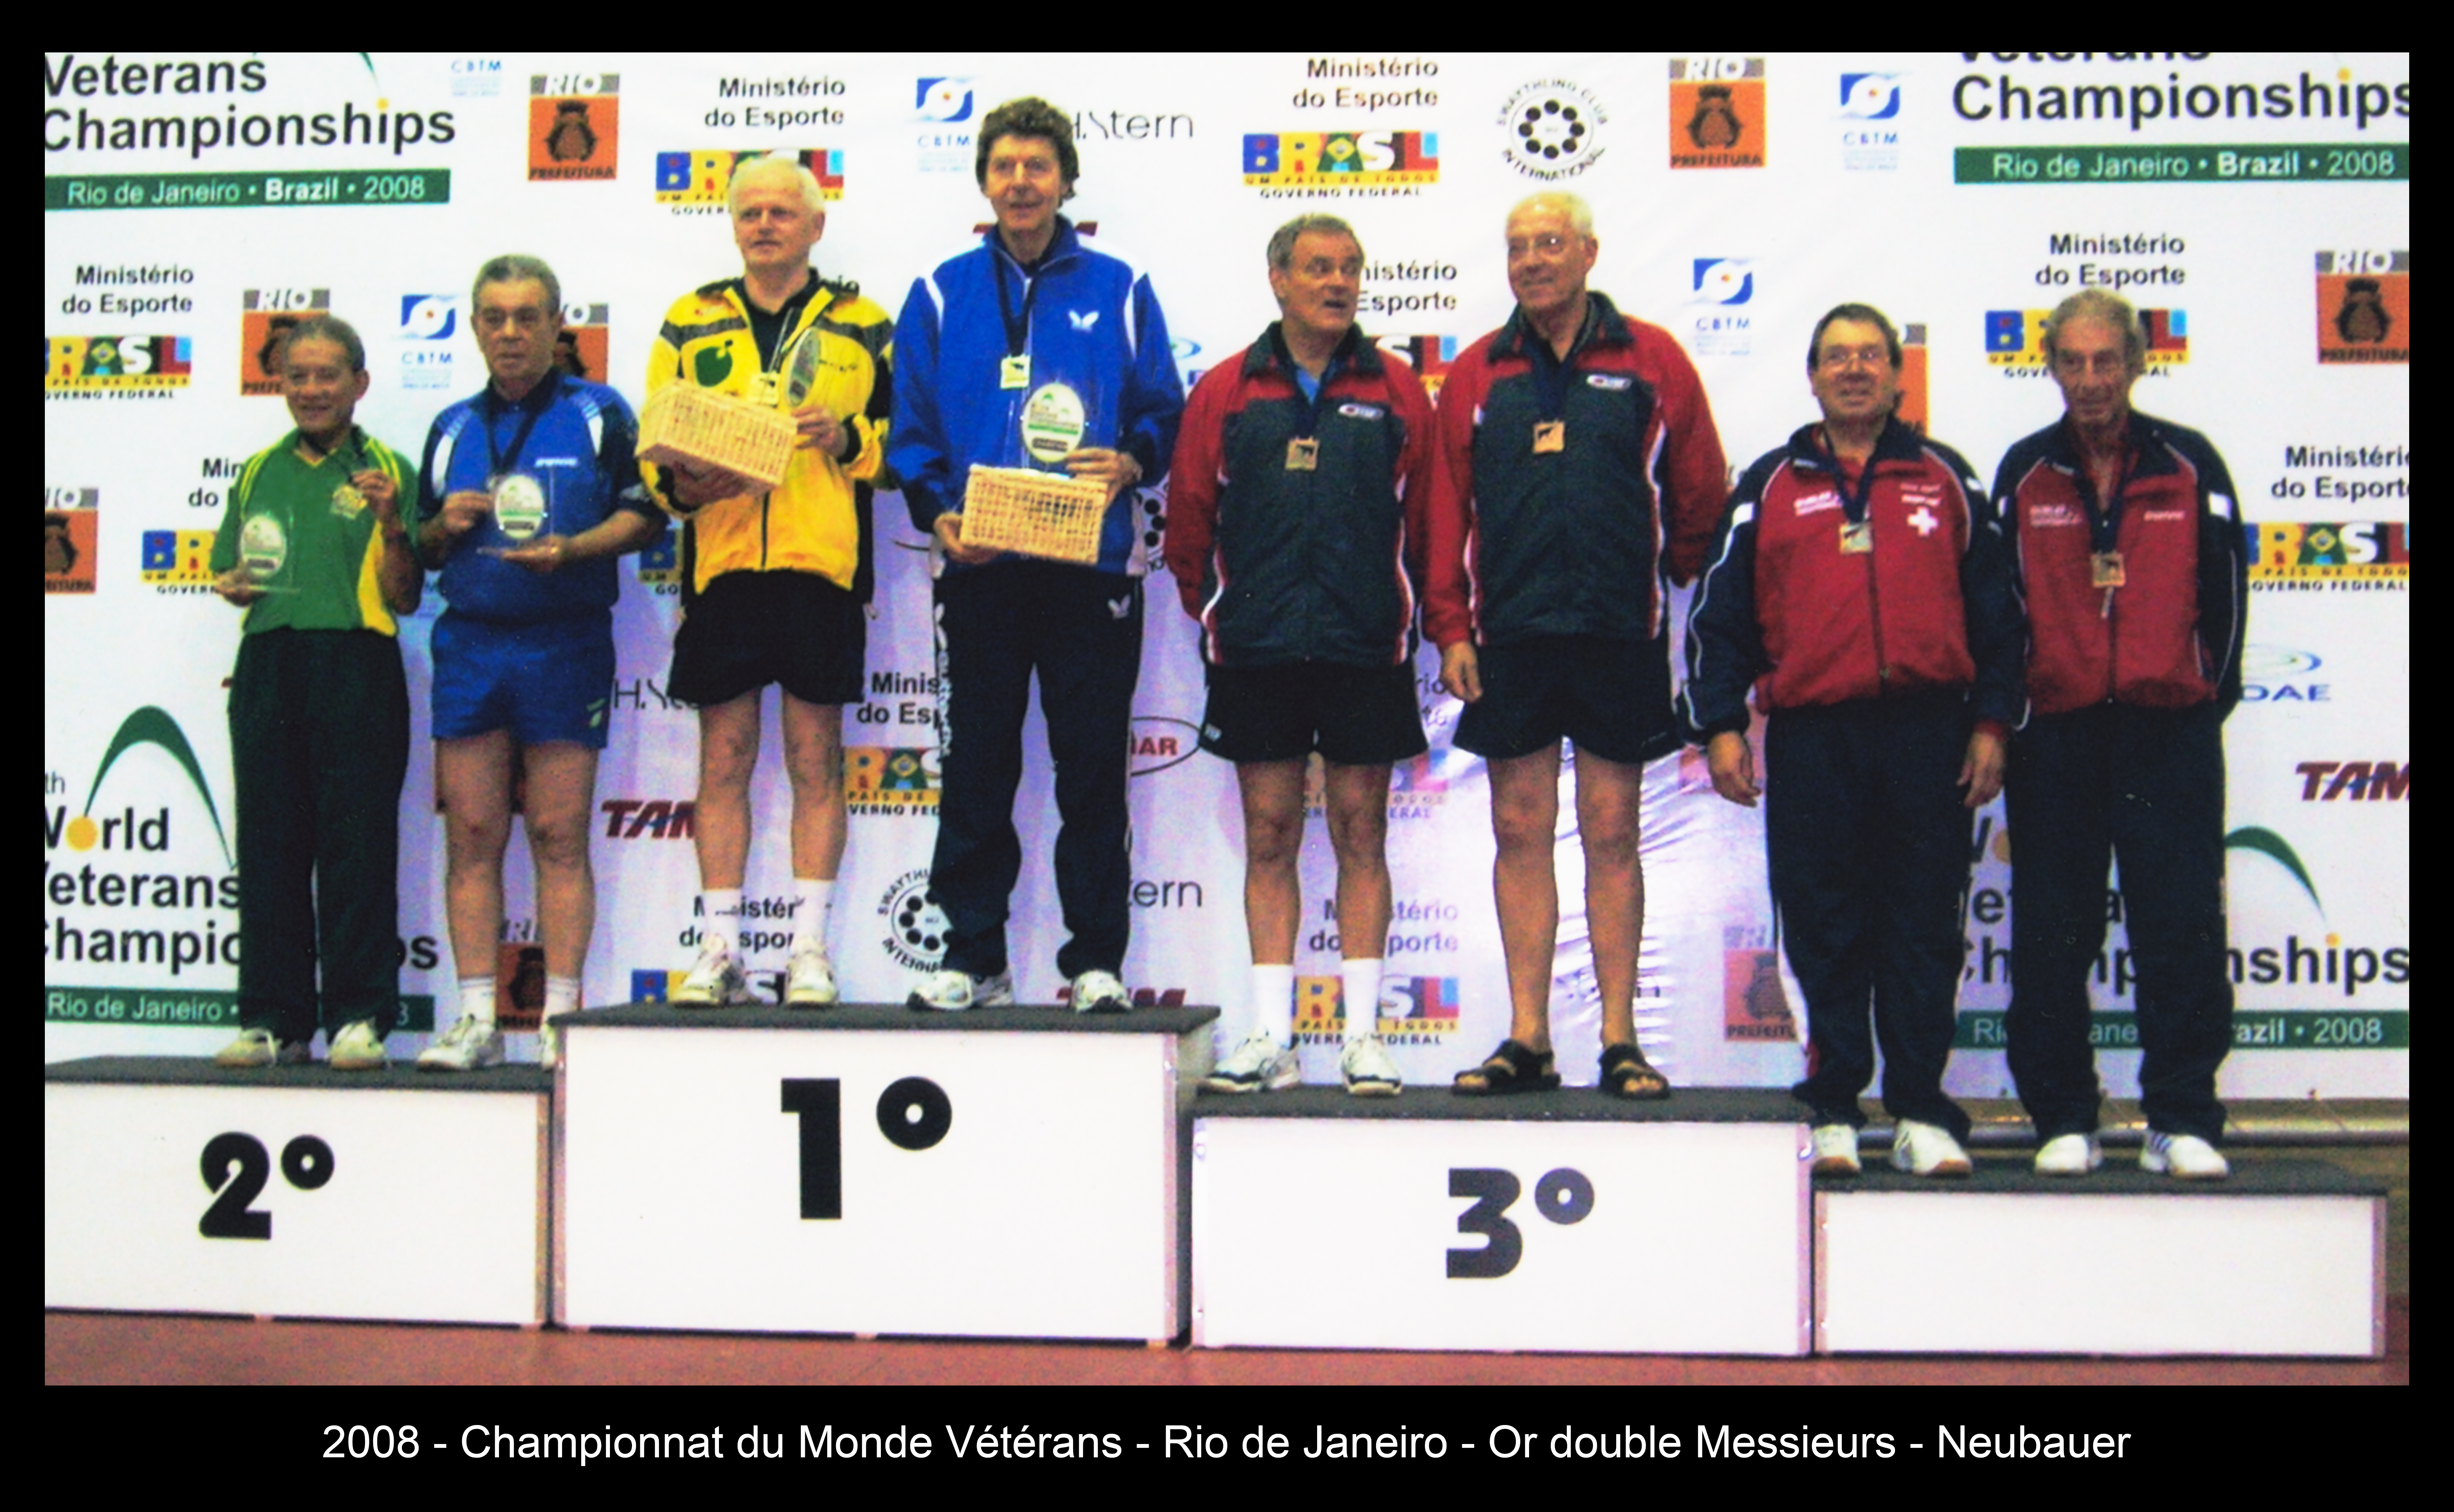 2008 - Championnat du Monde Vétérans - Rio de Janeiro - Or double Messieurs - Neubauer